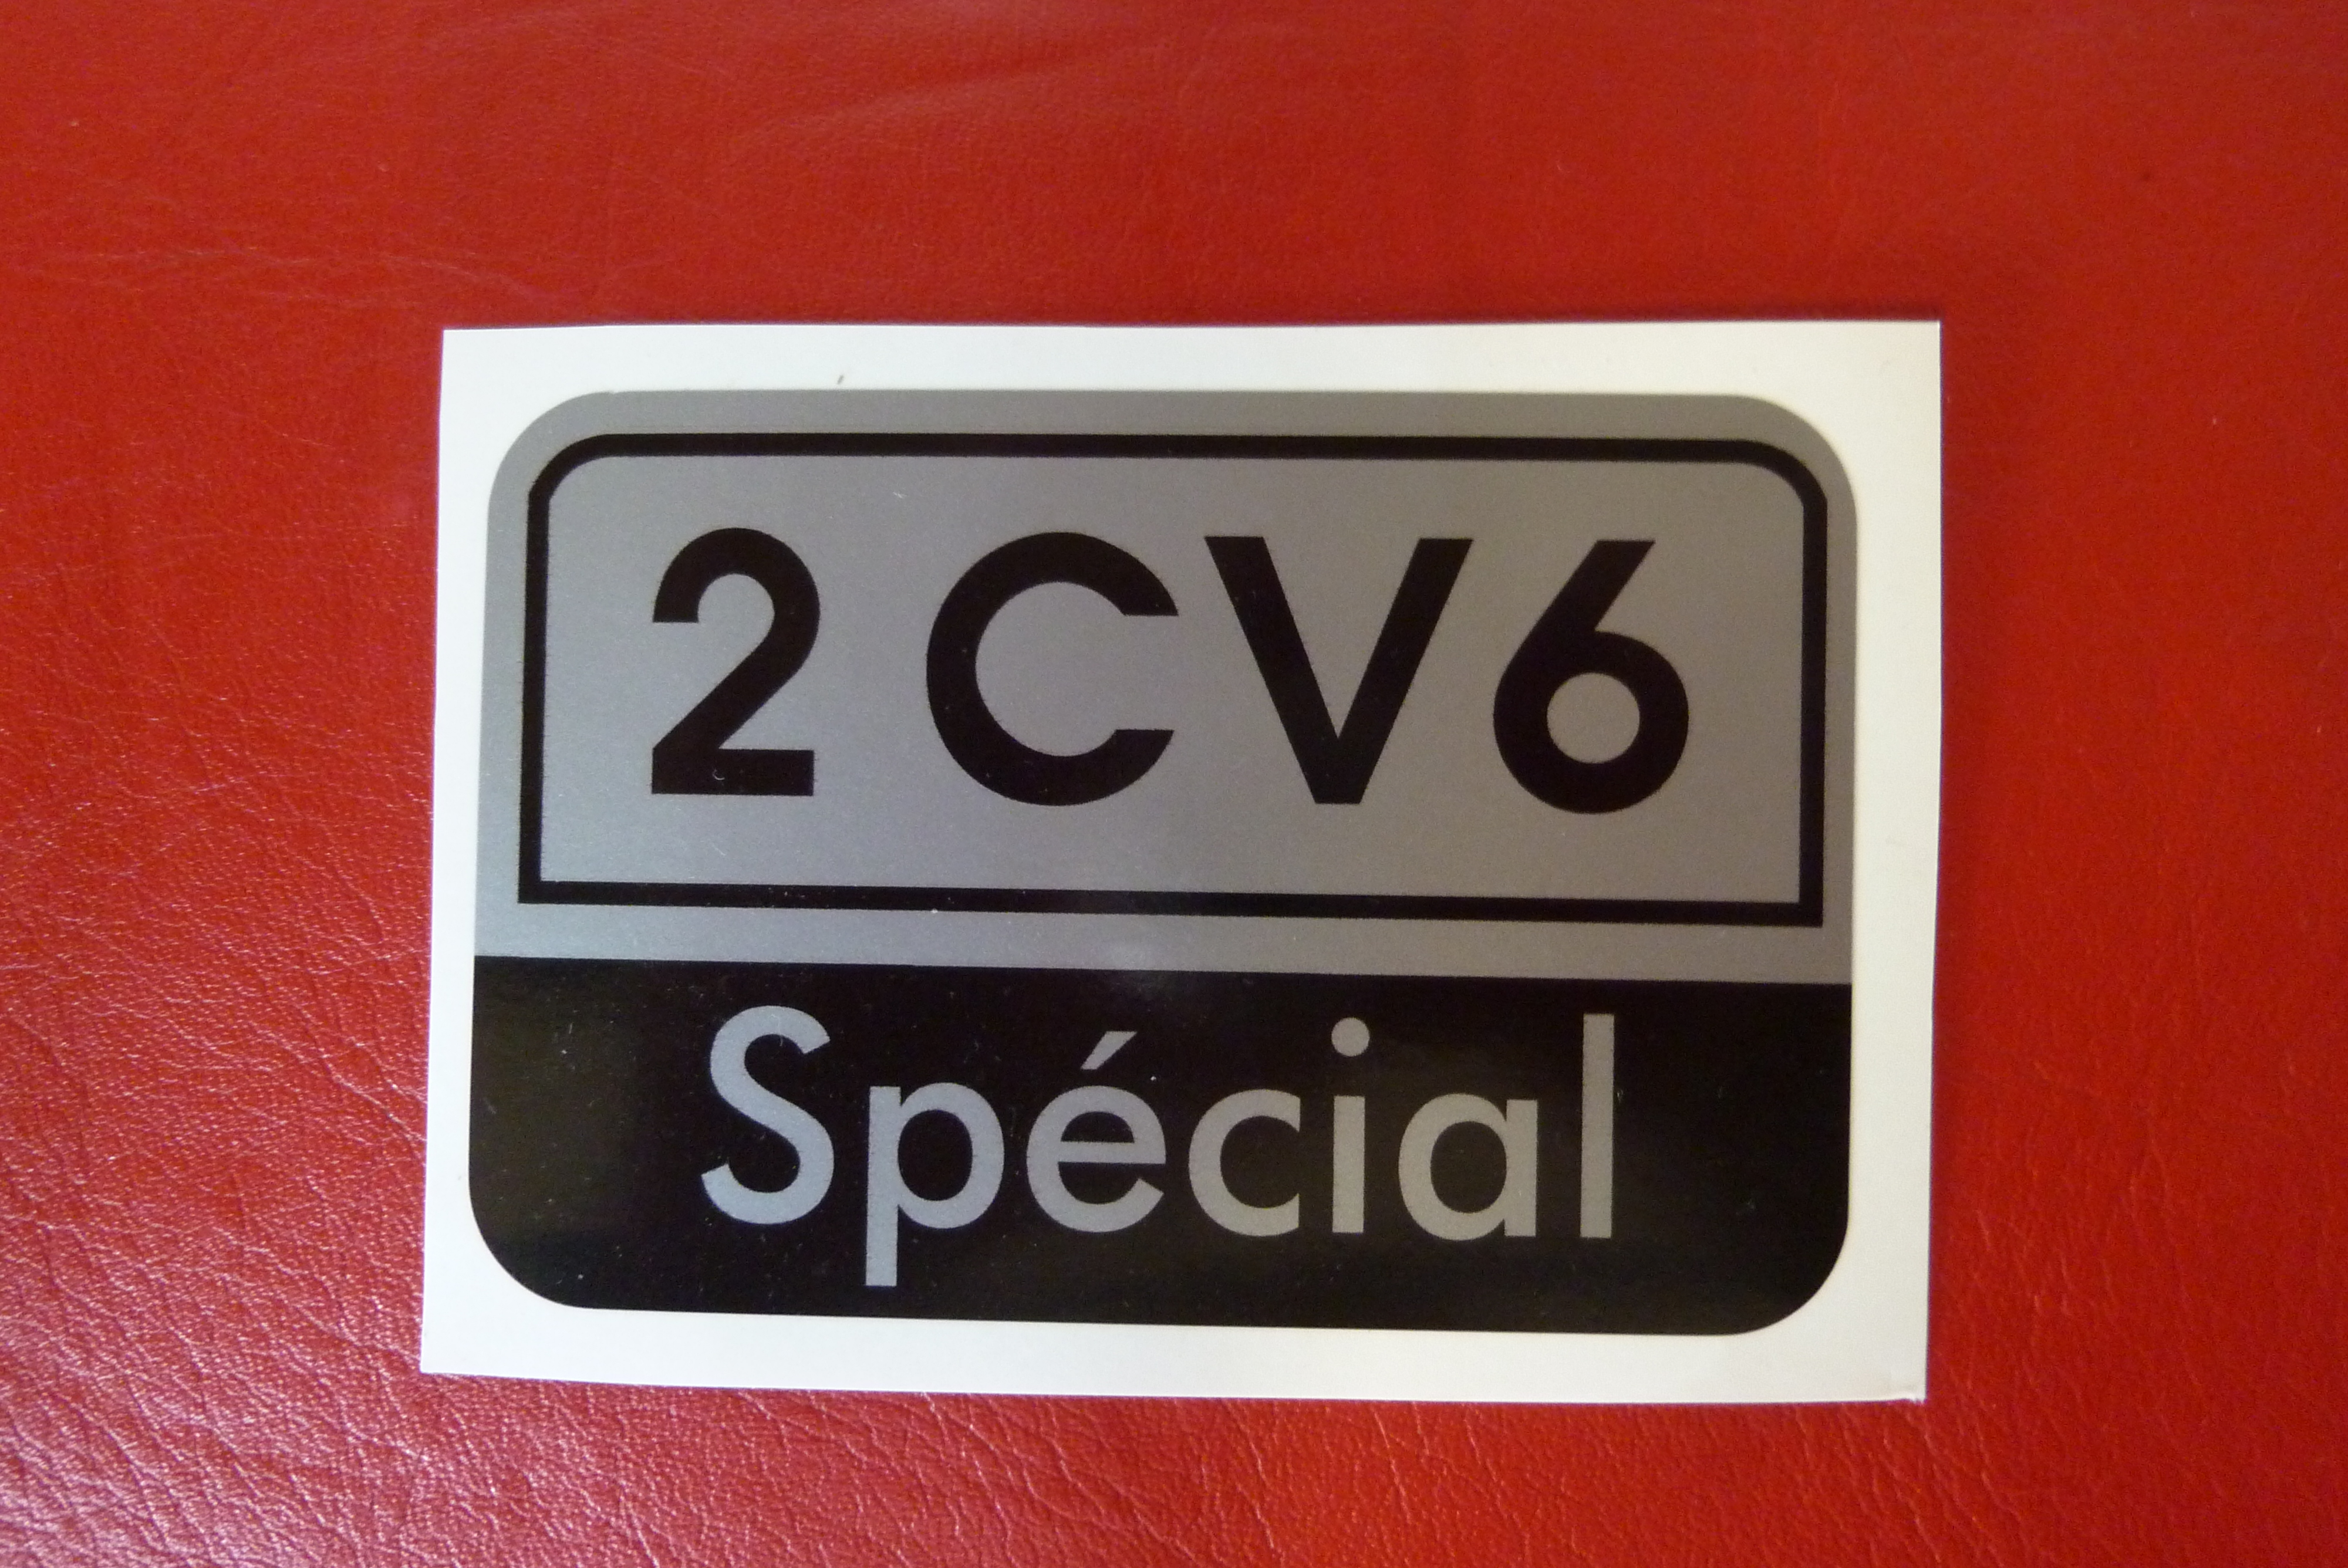 2CV6 Special